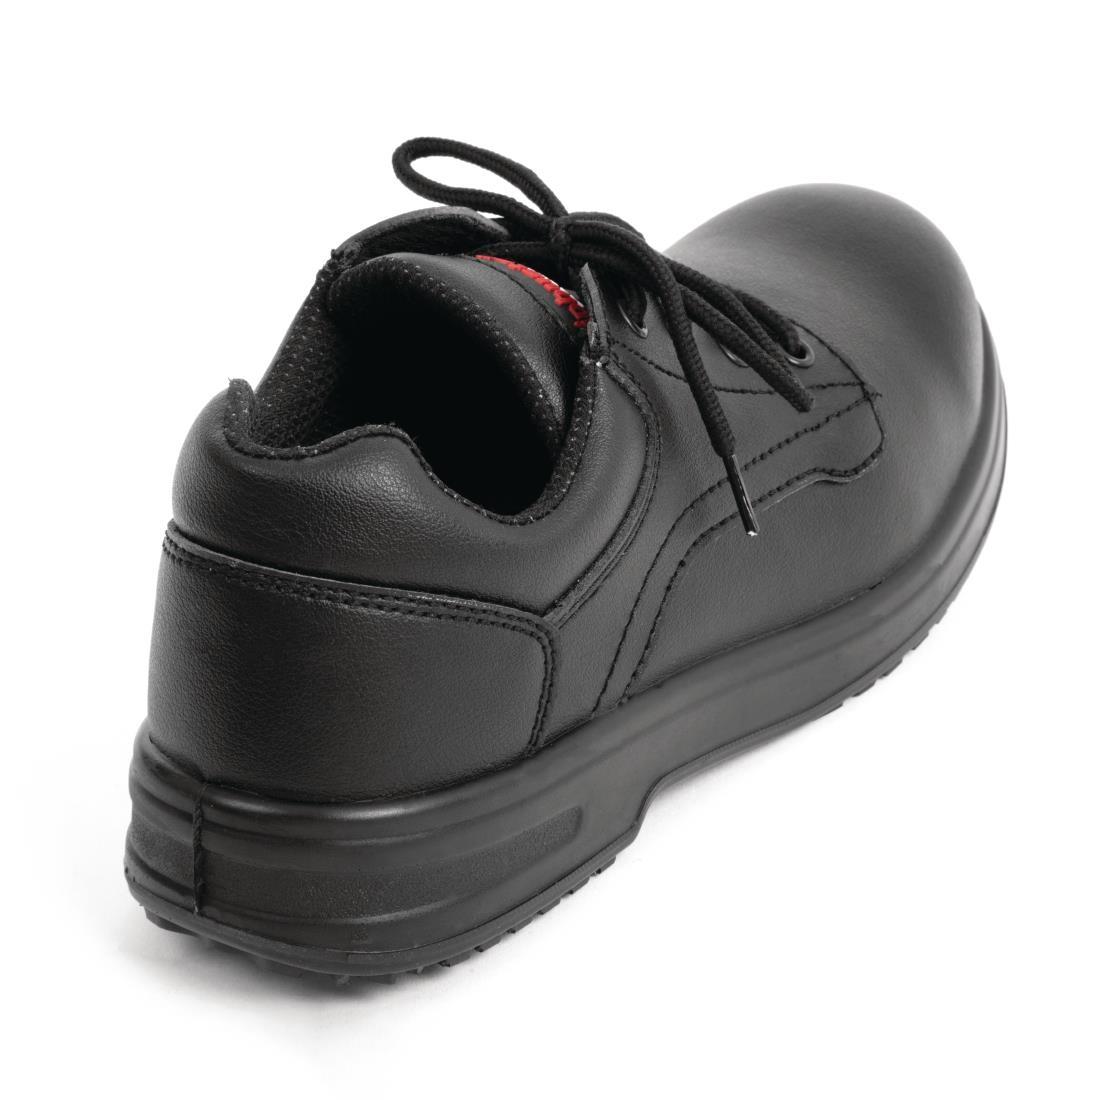 Slipbuster Basic Toe Cap Safety Shoes Black 43 - BB497-43  - 3